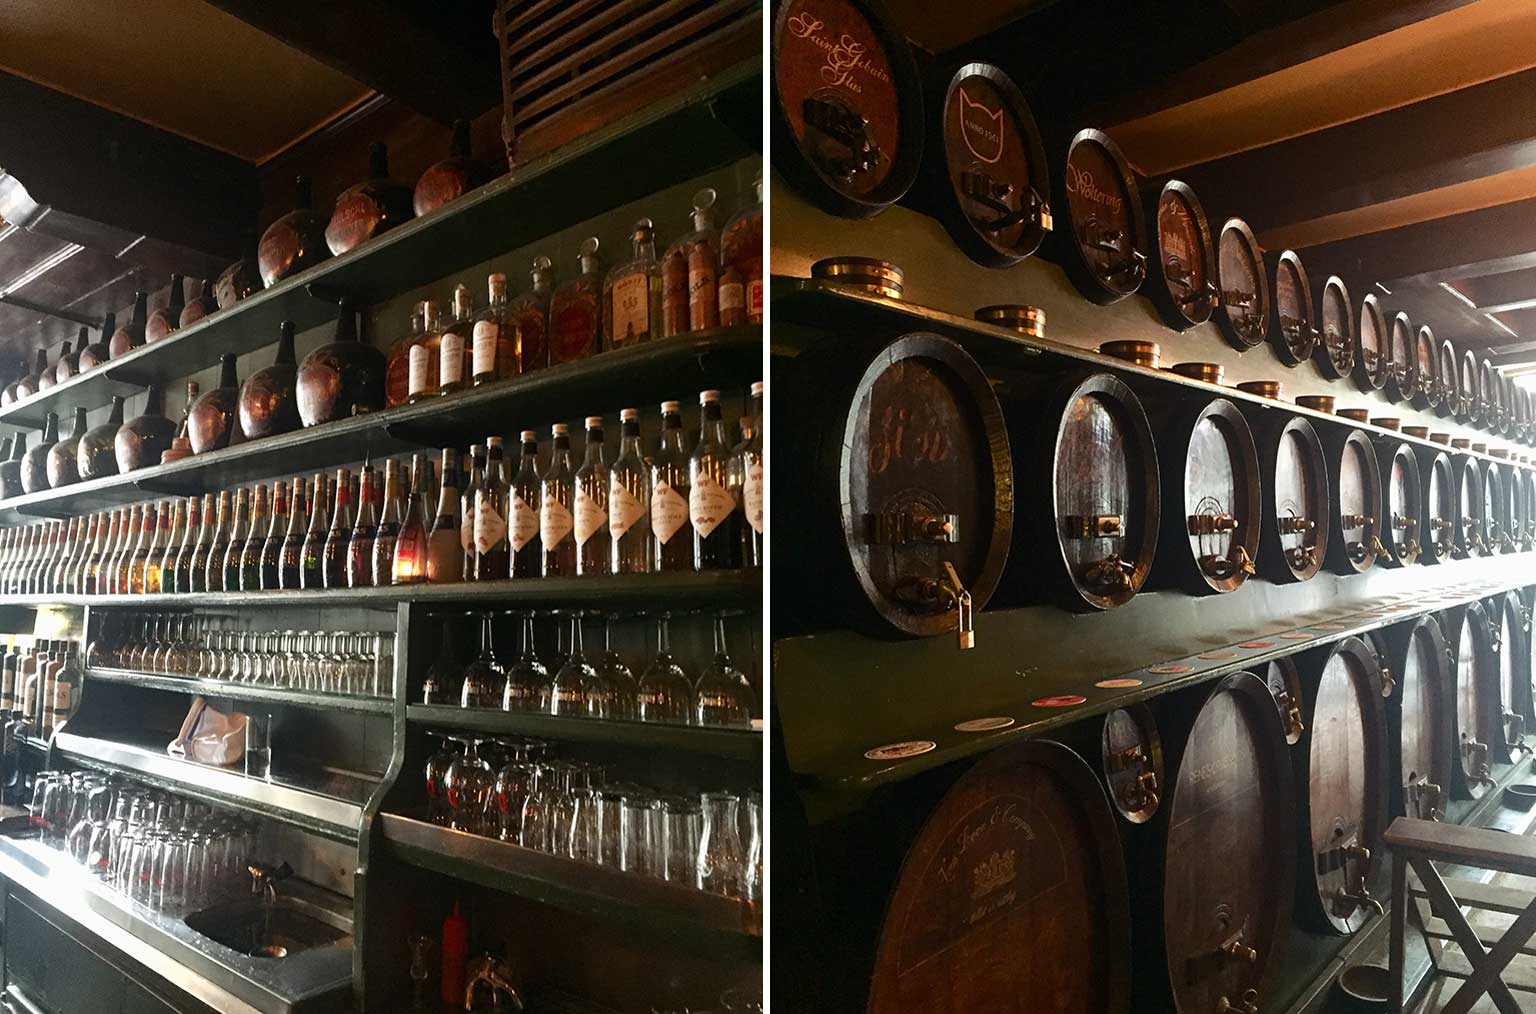 Inside De Drie Fleschjes, Amsterdam, bottles behind the bar and wall of casks